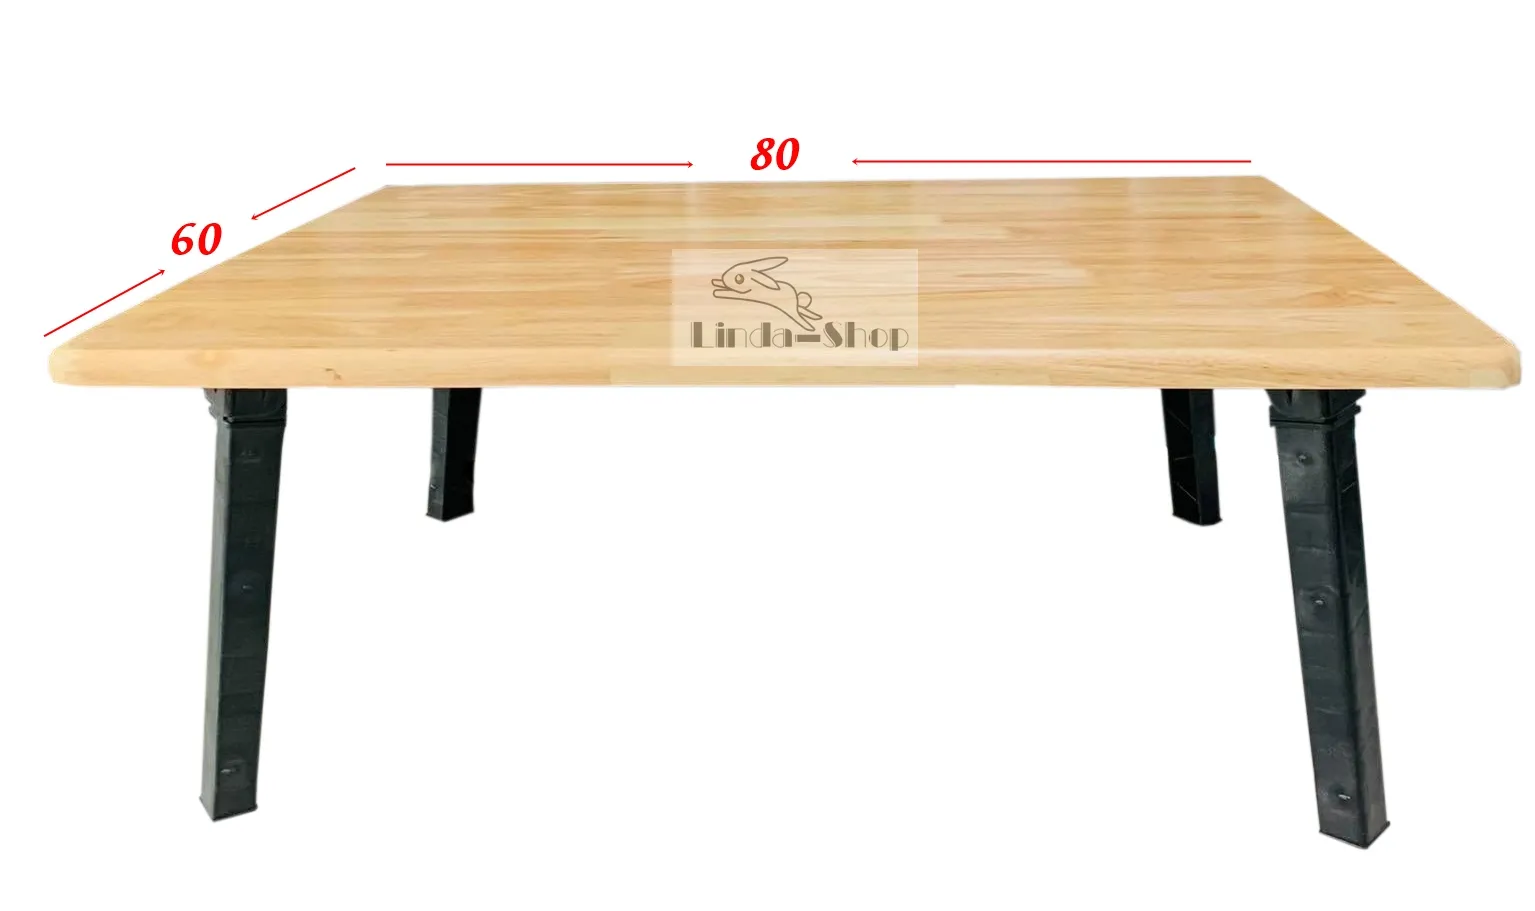 โต๊ะญี่ปุ่น โต๊ะญี่ปุ่นทำจากไม้จริง ขนาด 60x80 c.m.